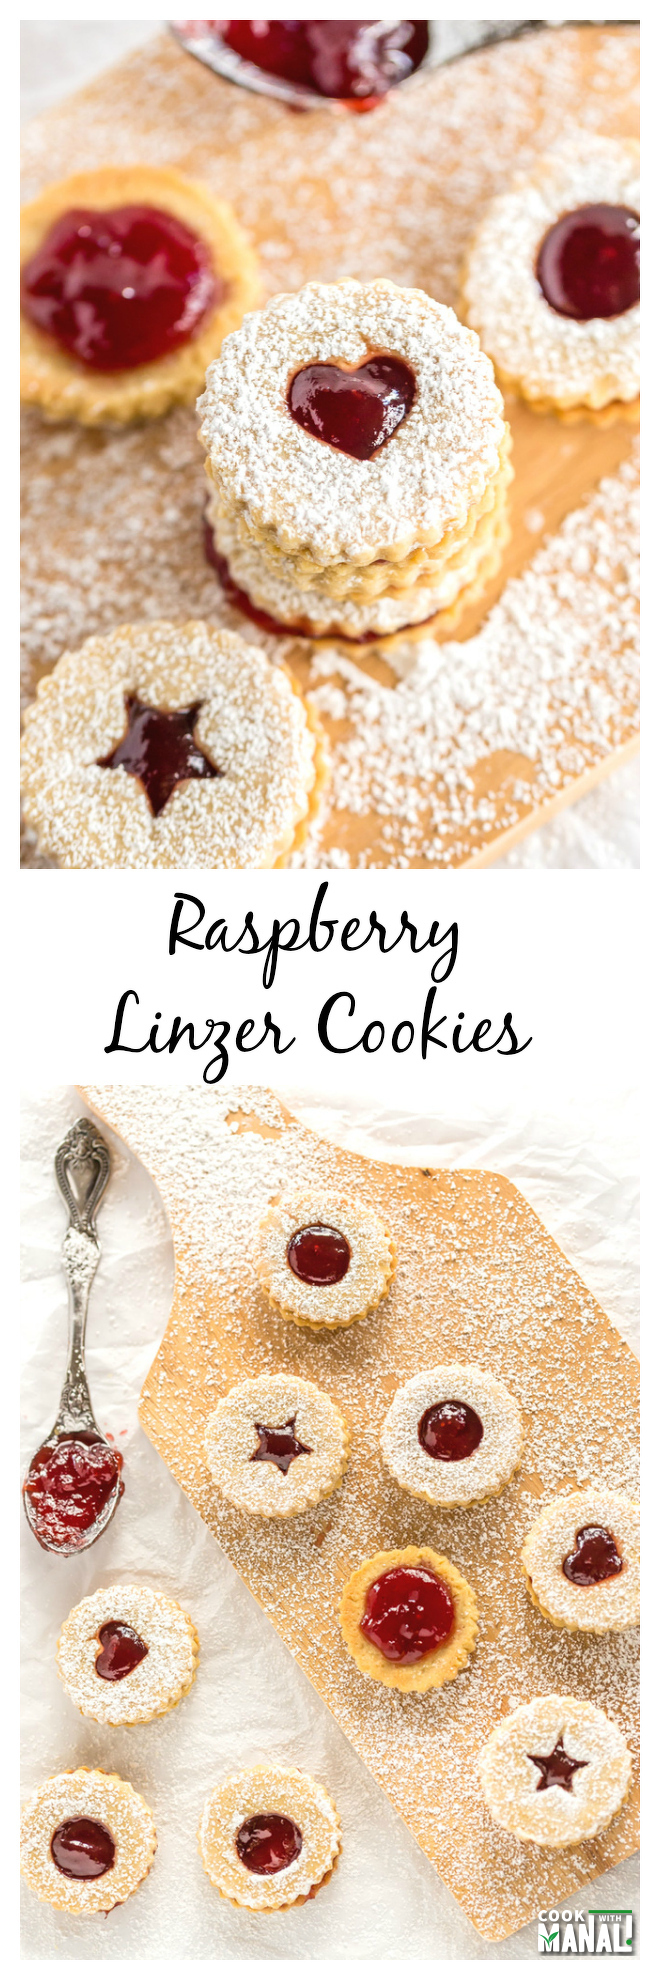 Raspberry Linzer Cookie Collage